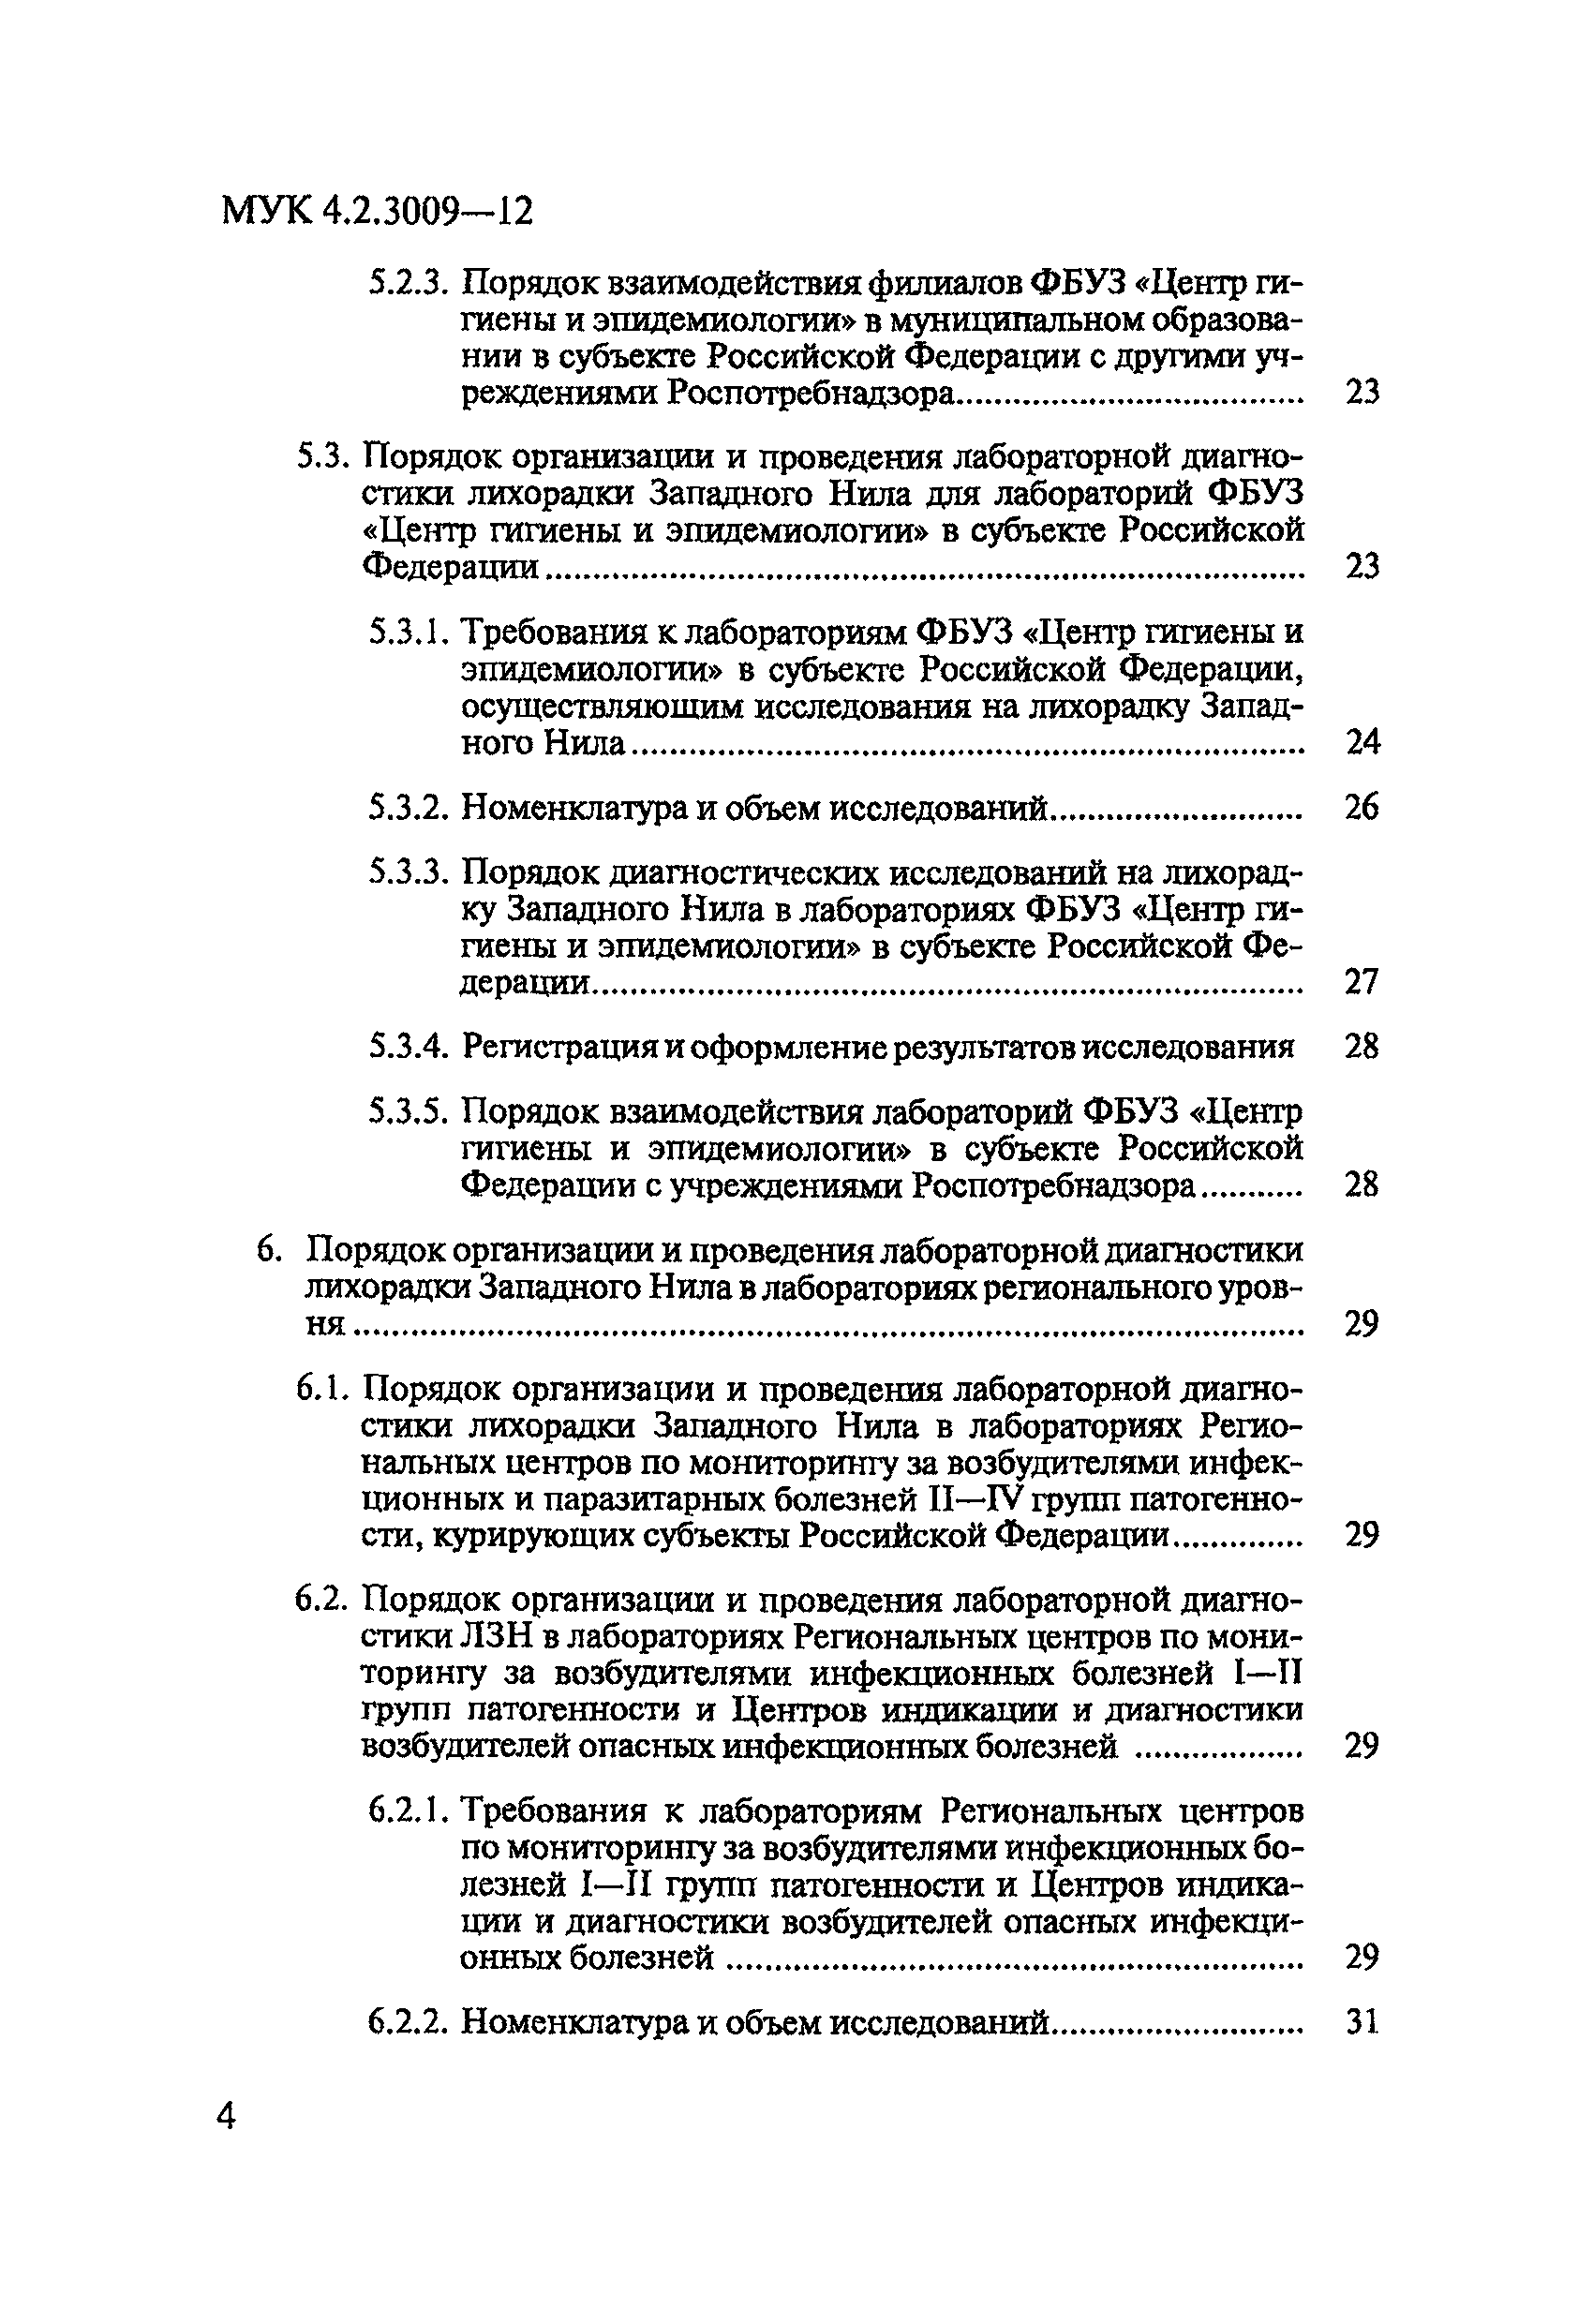 МУК 4.2.3009-12